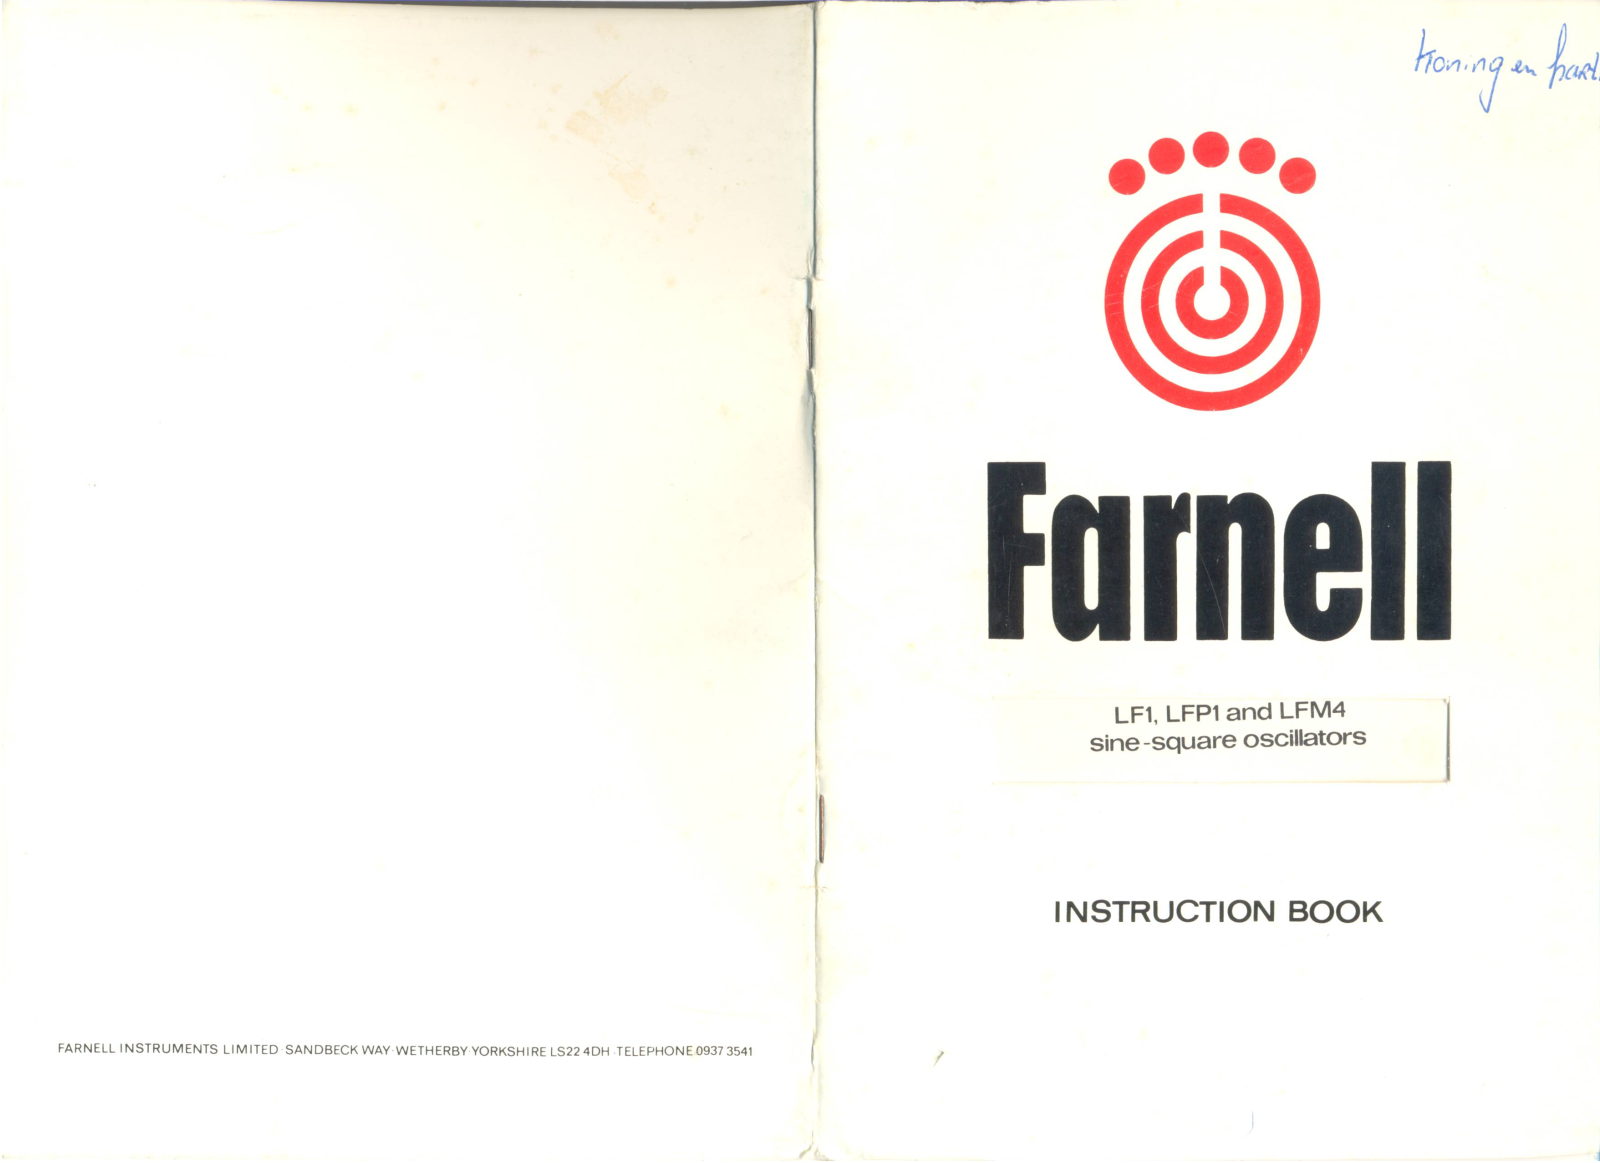 Farnell LFP1, LFM4, LF1 Service manual